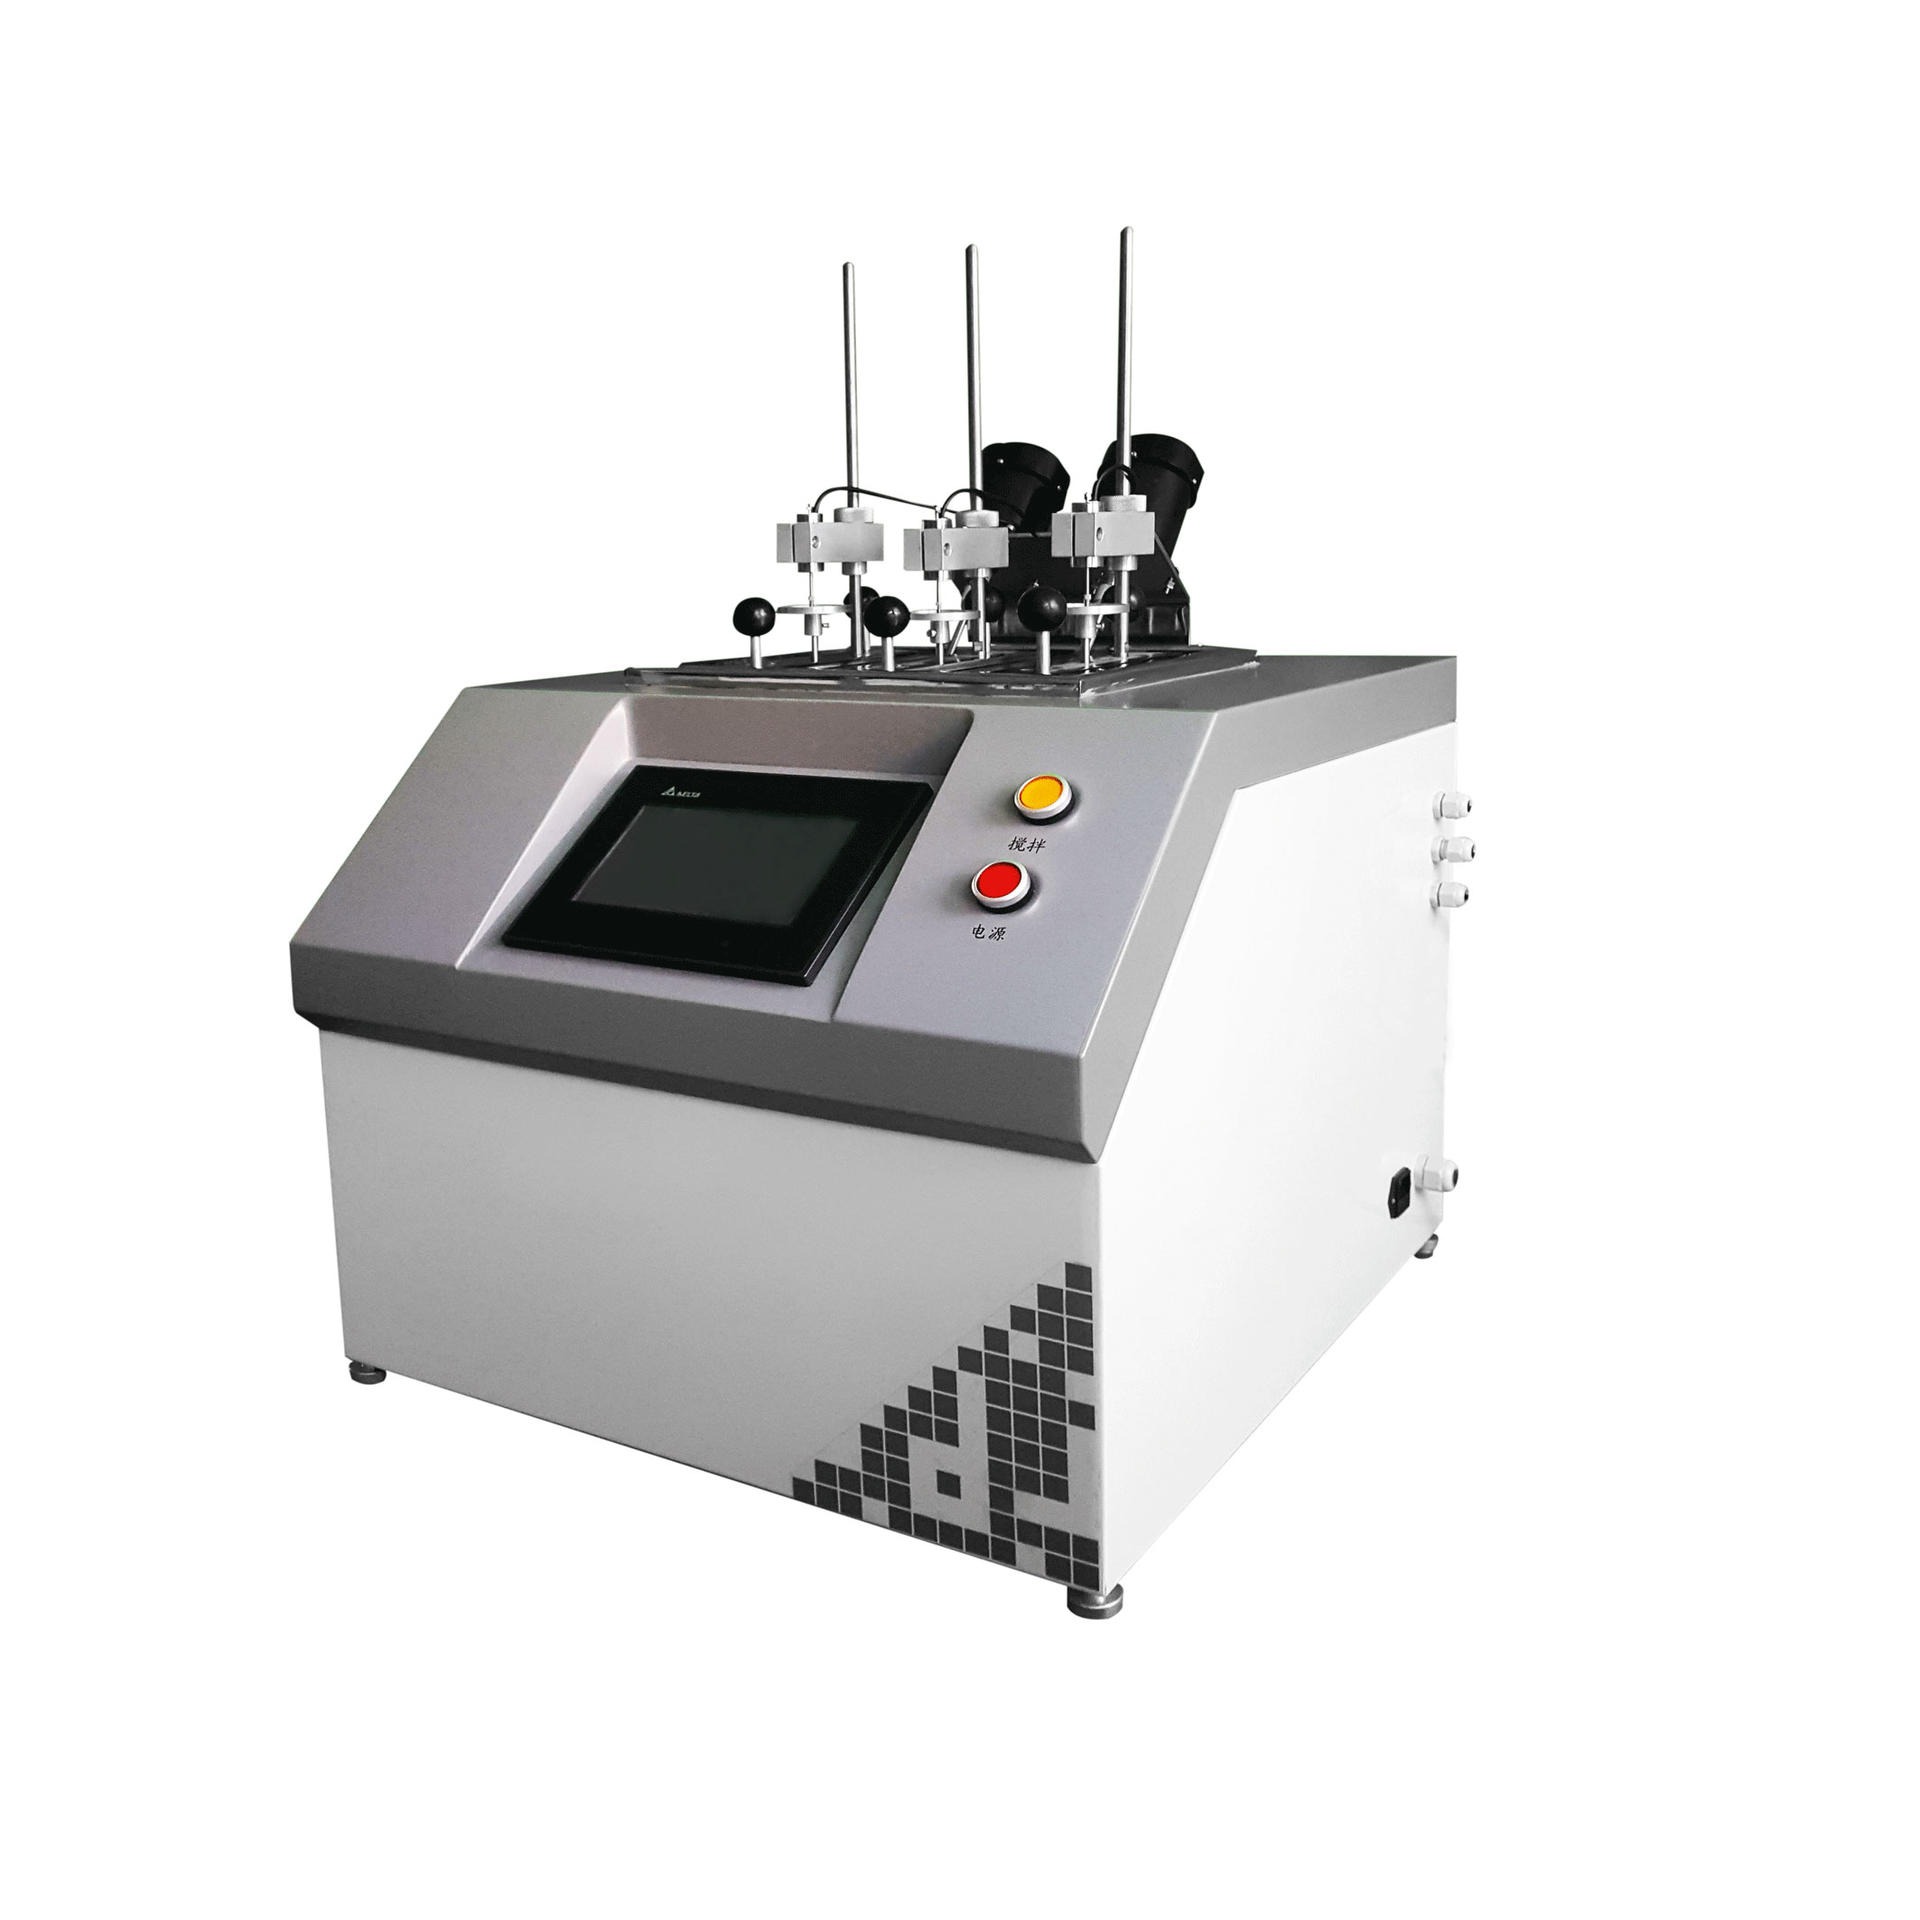 热变形测定仪   大加热变形维卡  XRW-300UA  维卡仪  厂家优质维卡温度测定仪  热变形维卡温度测定仪